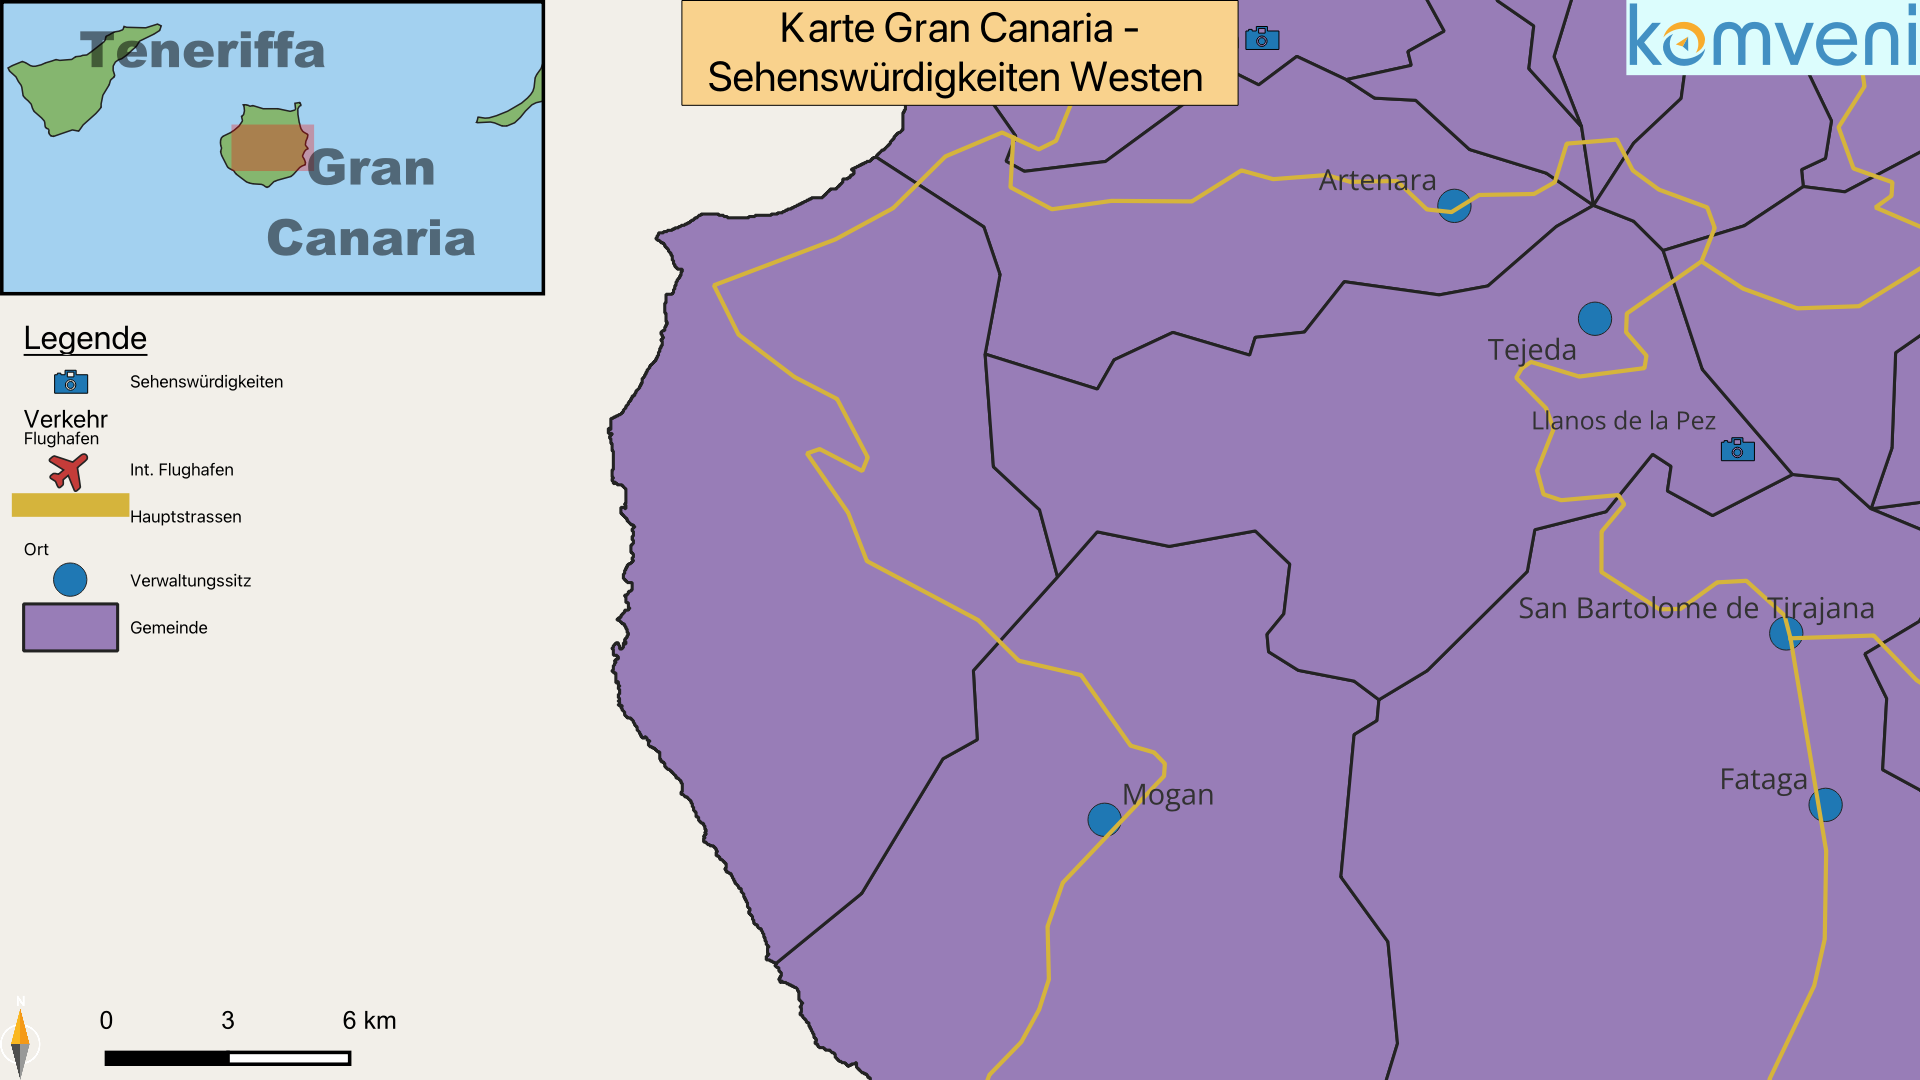 Karte Gran Canaria Sehenswuerdigkeiten Westen